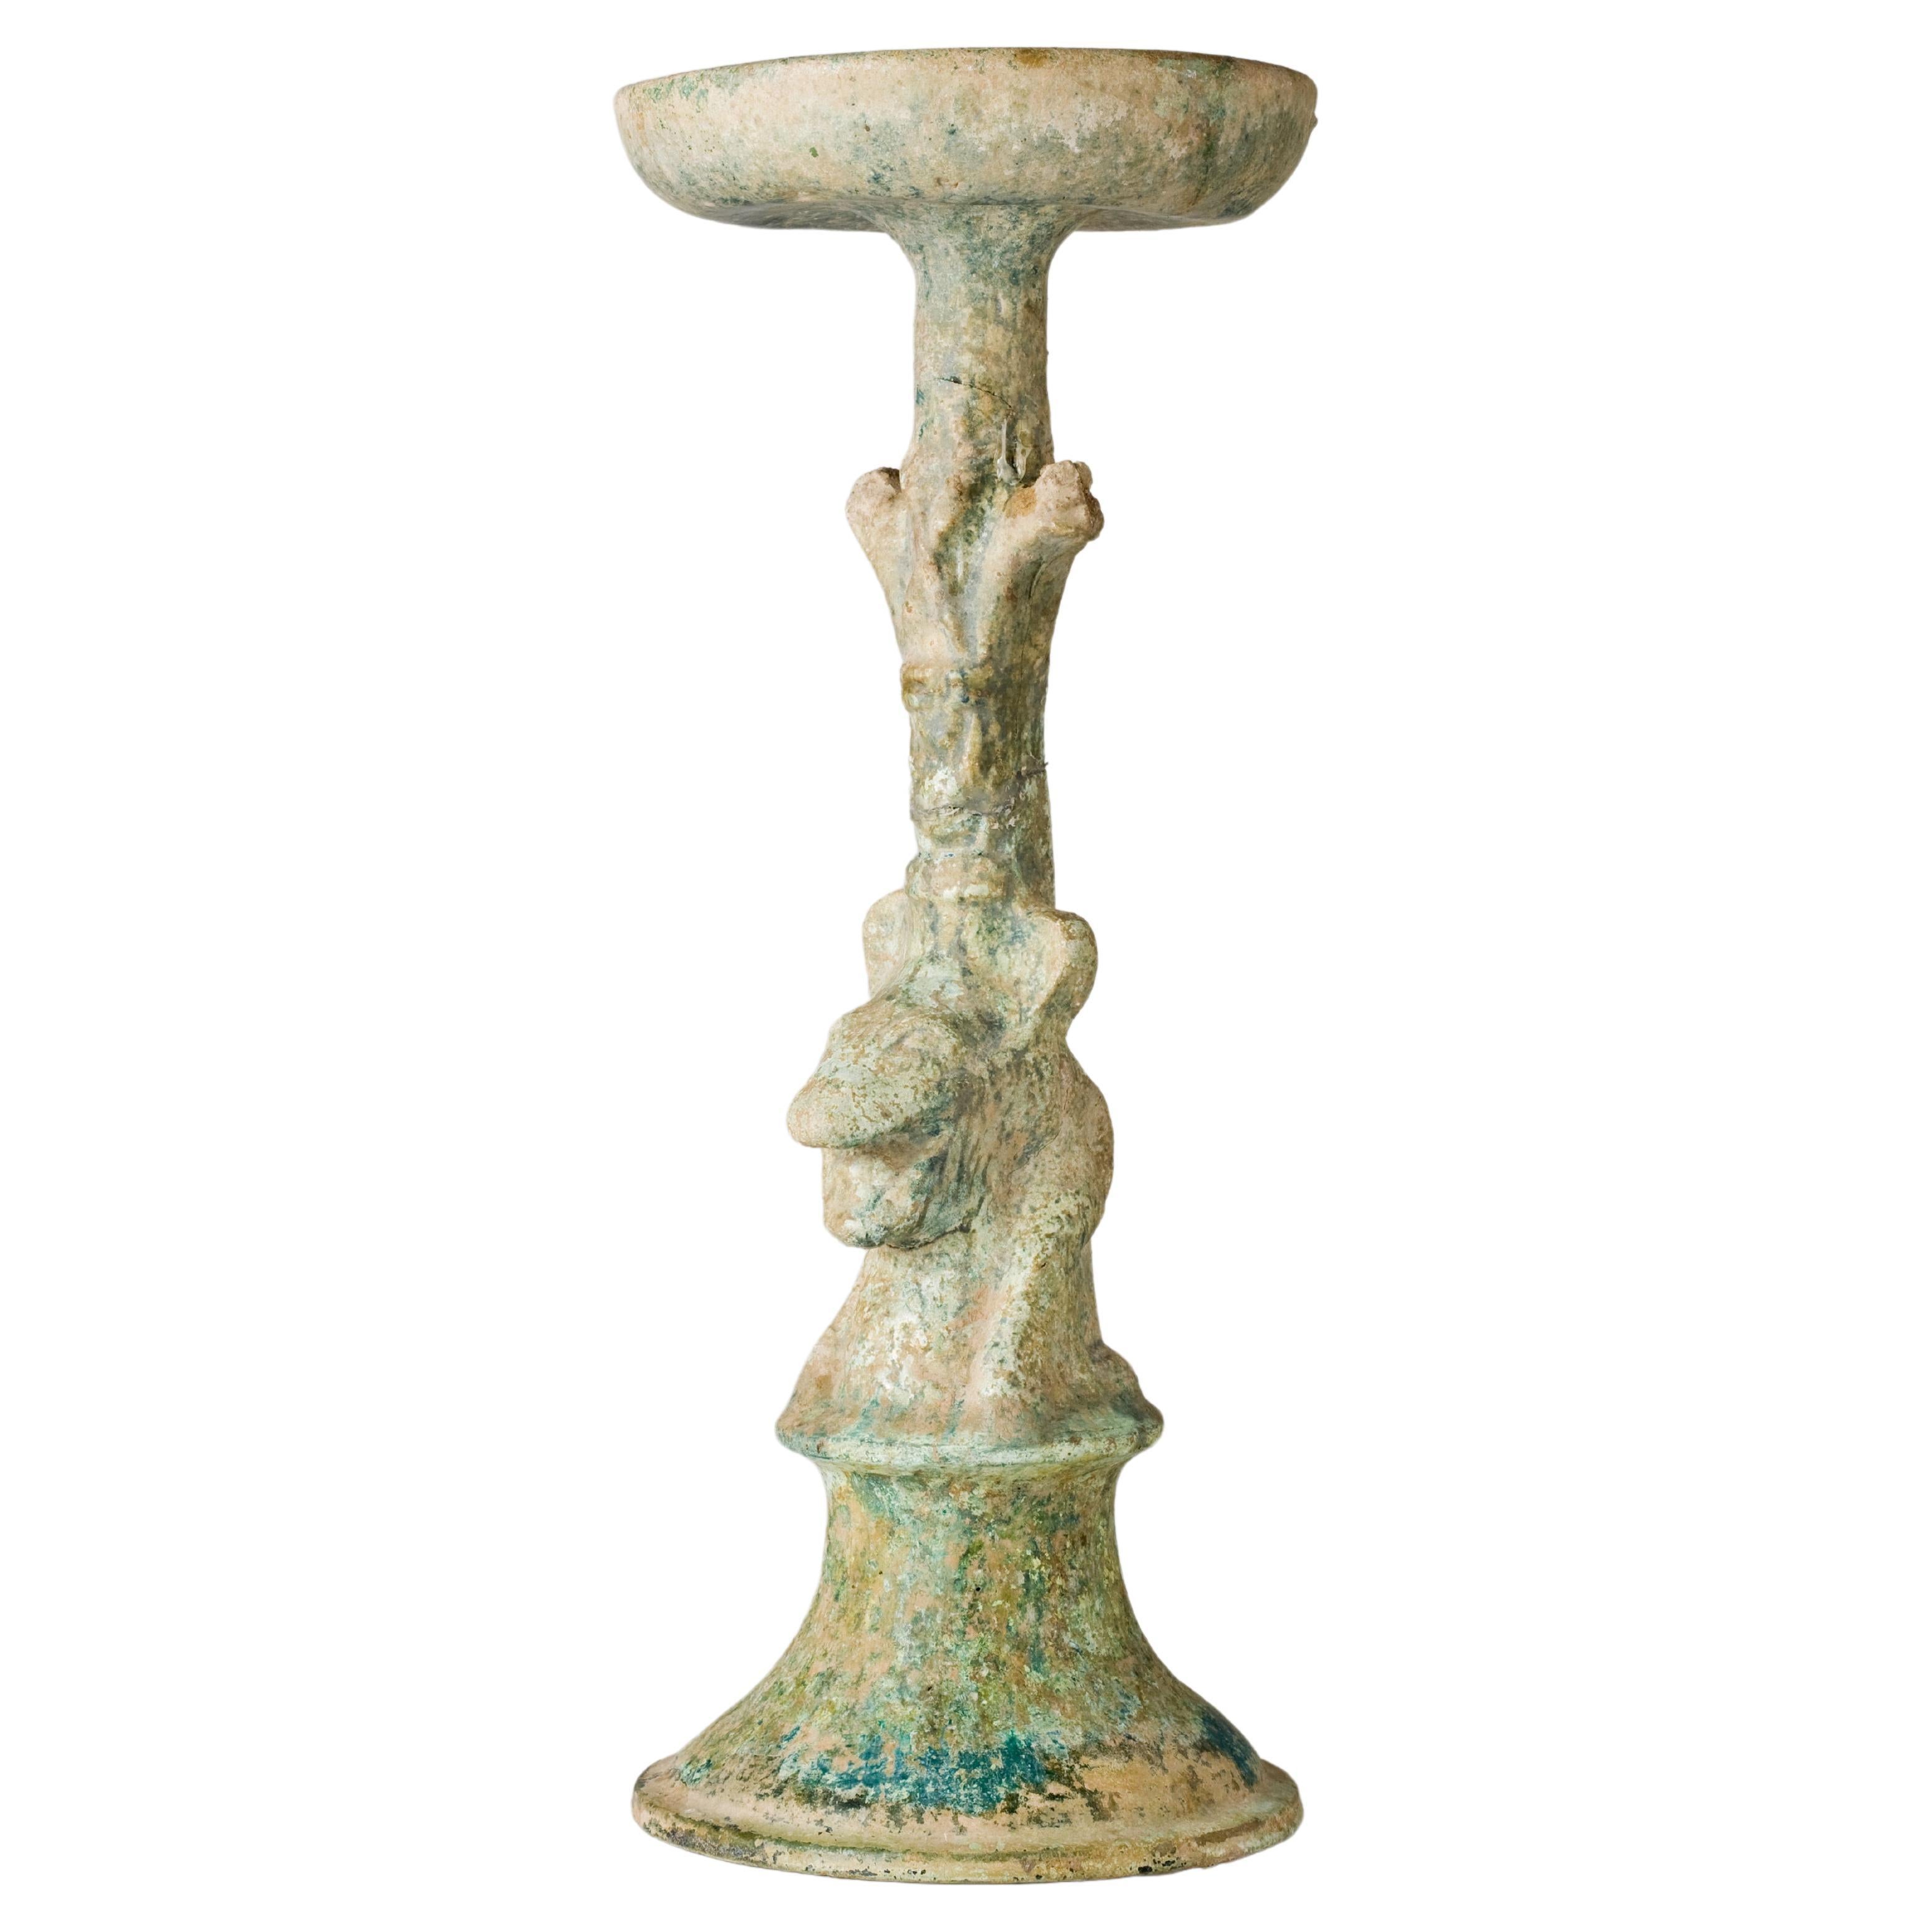 Chandelier en poterie à glaçure verte, Dynastie Han (206 av. J.-C. - 220 apr. J.-C.)